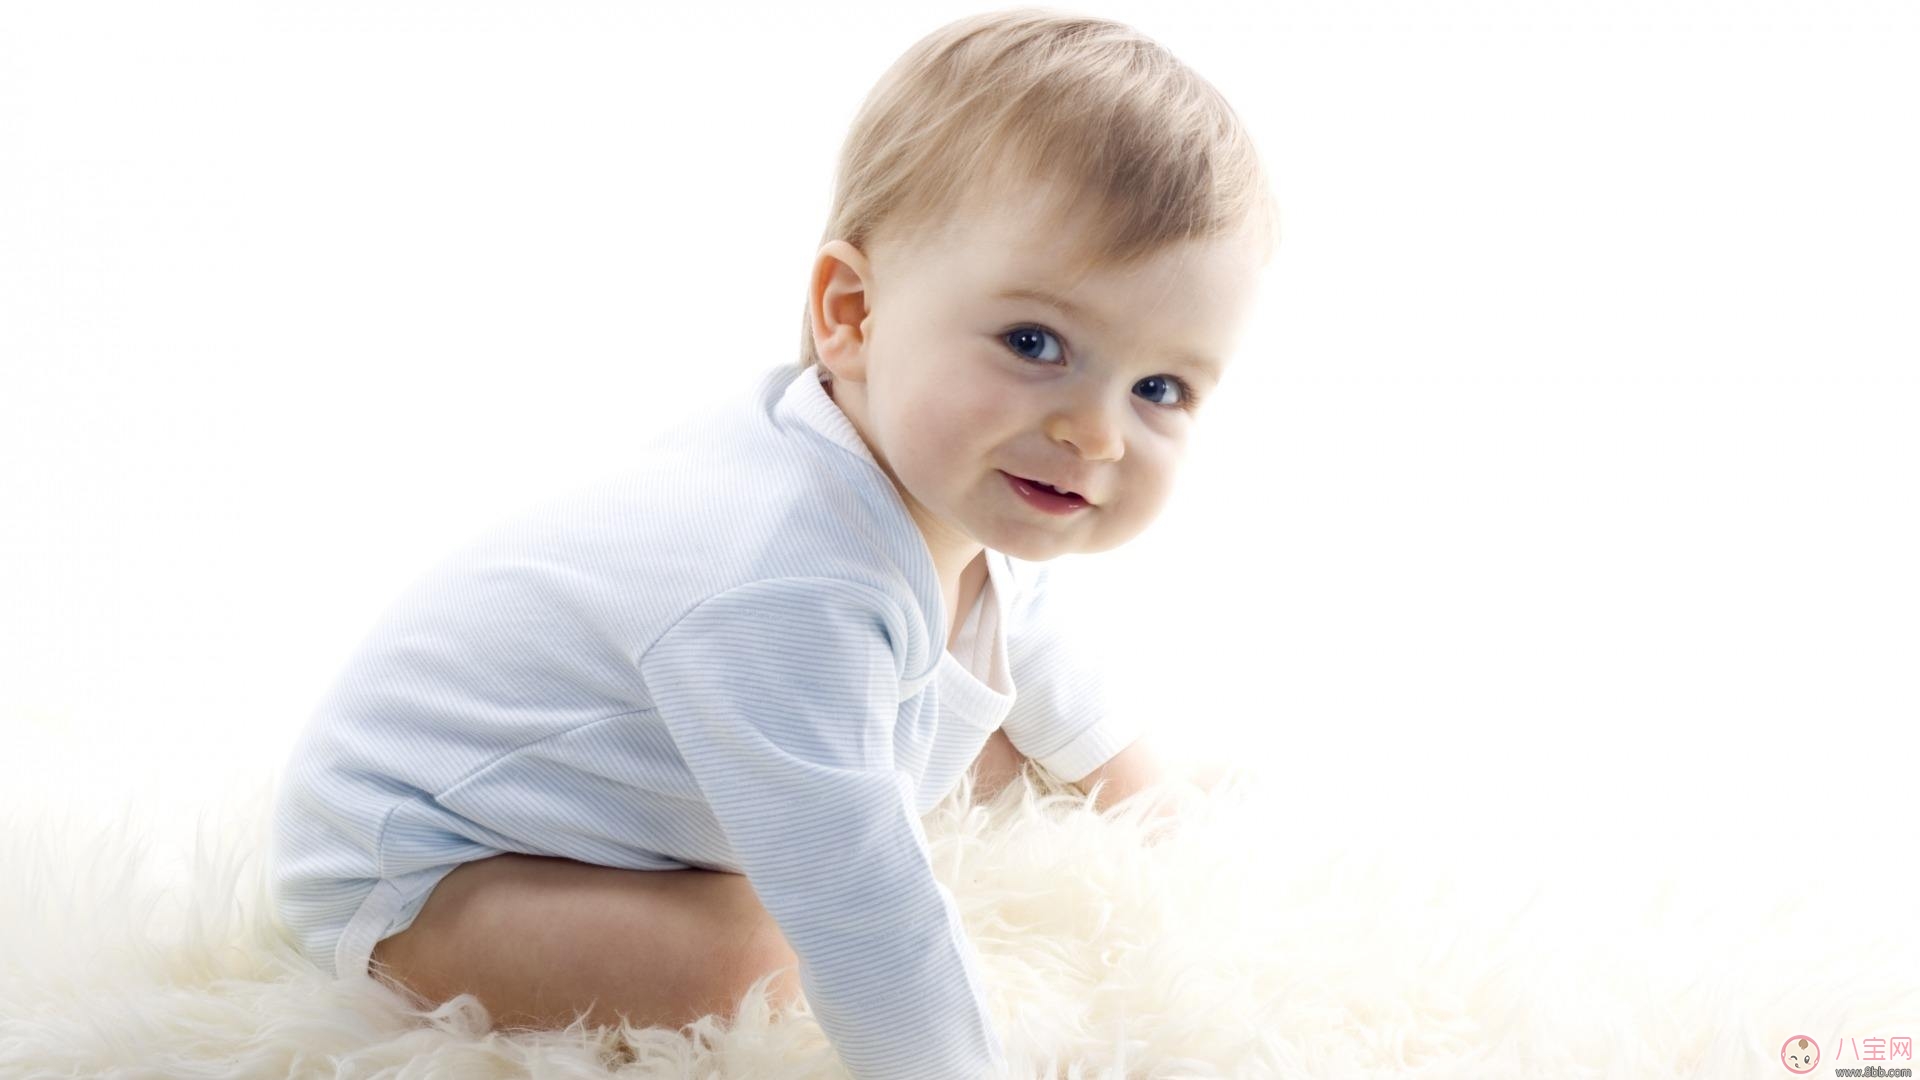 婴儿房应该如何布置 怎么做培养宝宝独立睡觉的习惯